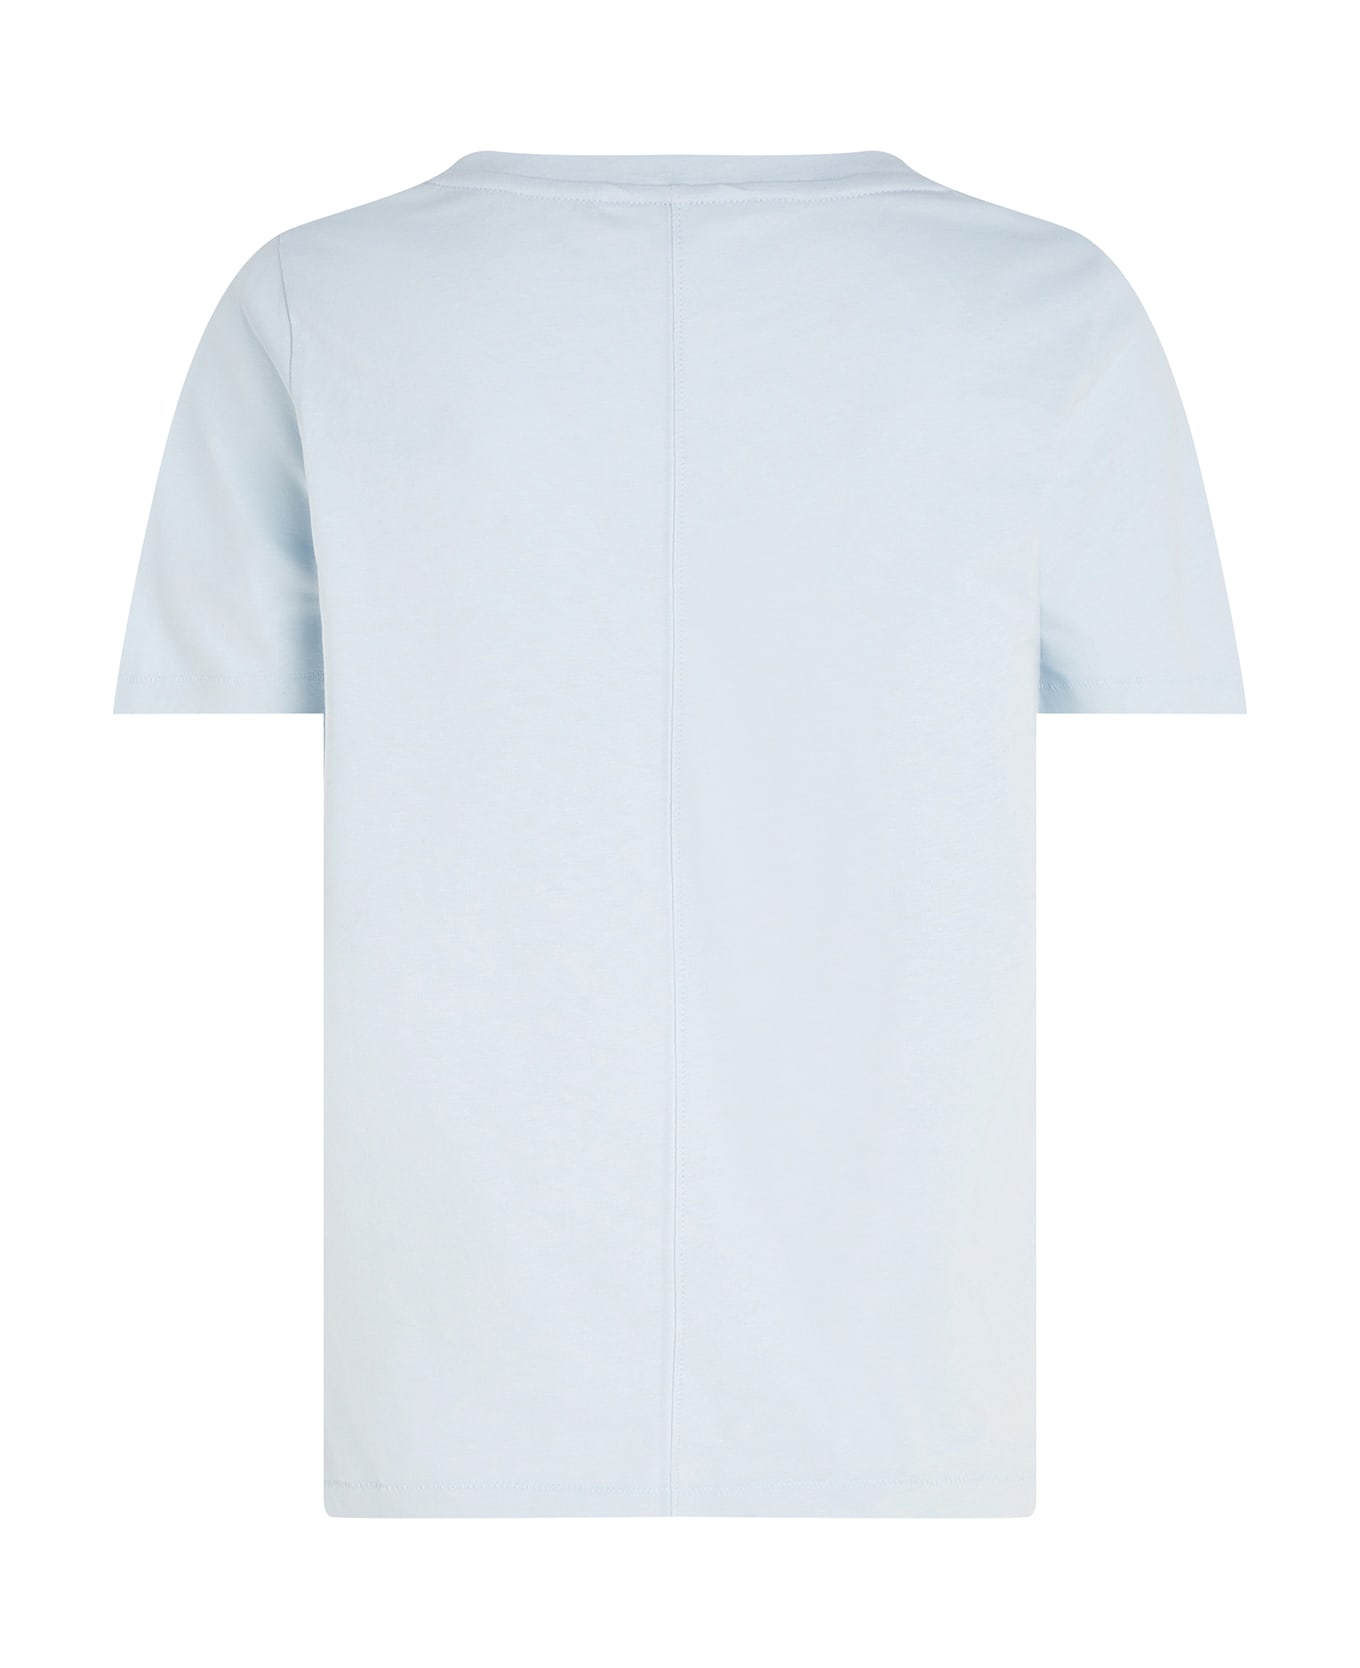 Tommy Hilfiger Modern T-shirt With V-neckline - BREEZY BLUE